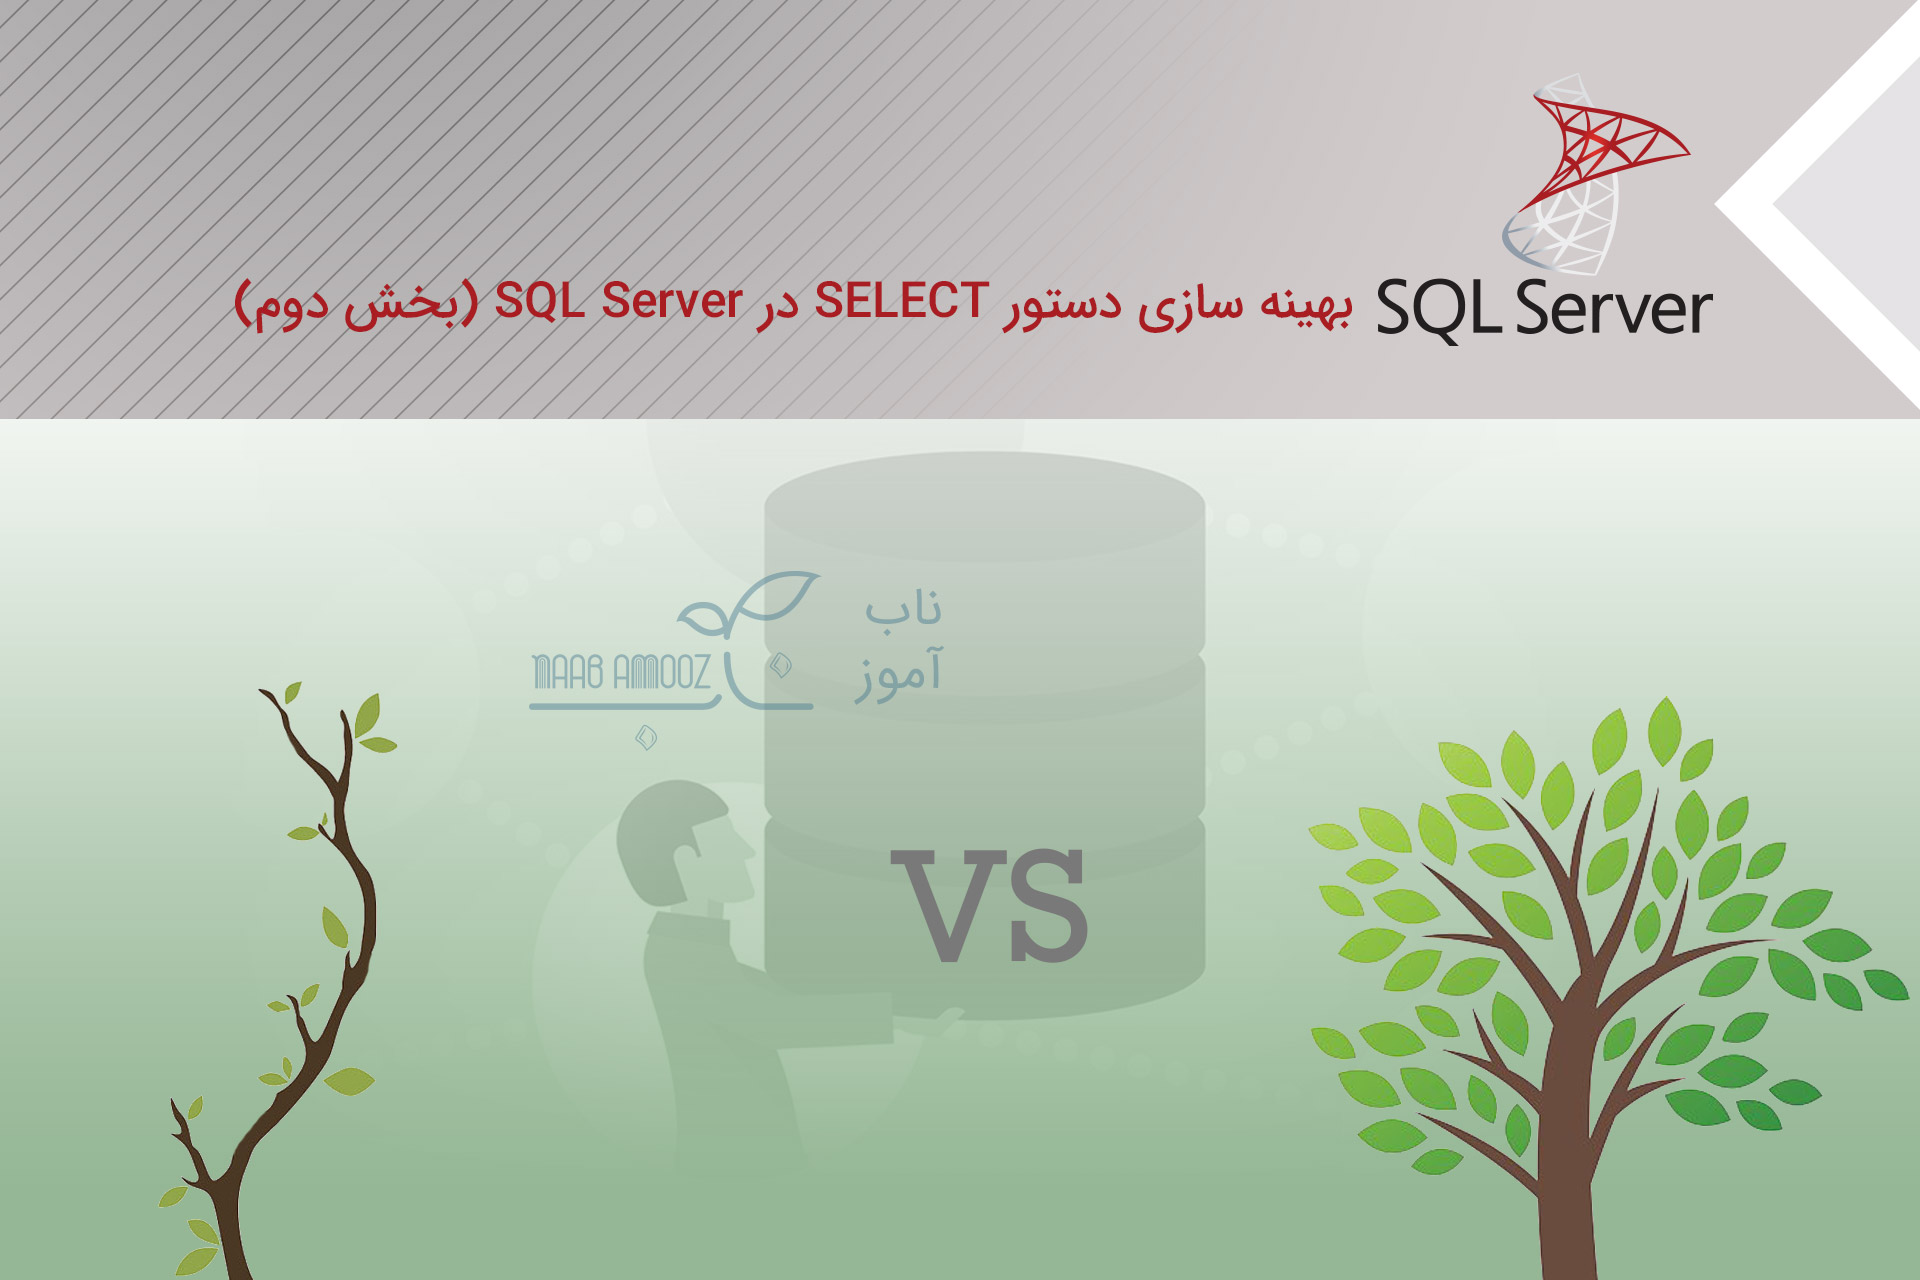 بهینه سازی دستور SELECT در SQL Server (بخش دوم)